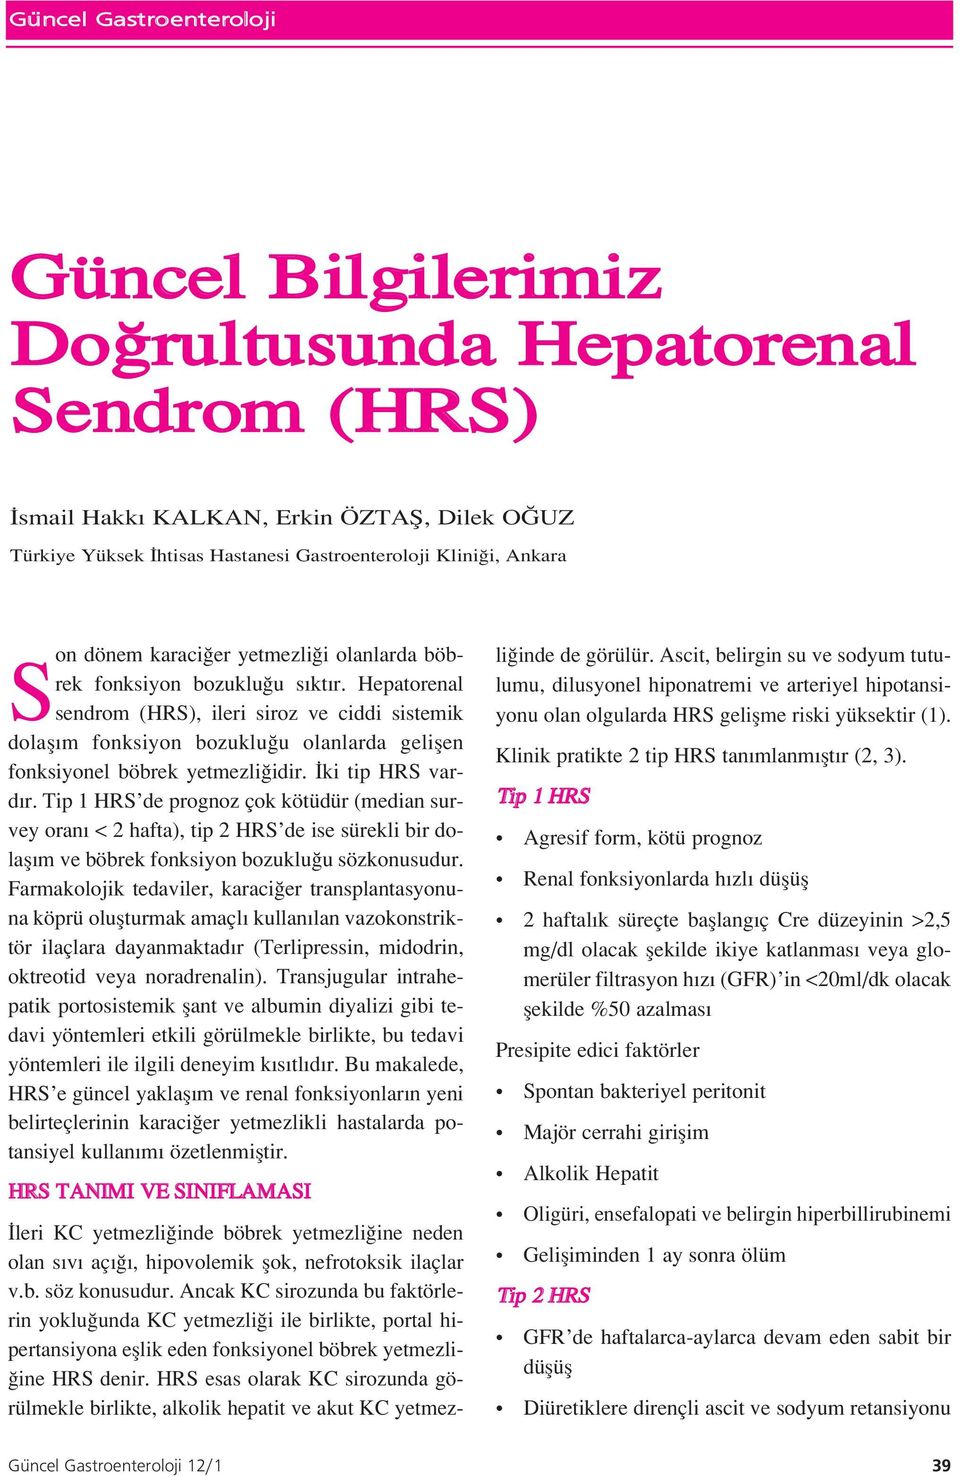 Hepatorenal sendrom (HRS), ileri siroz ve ciddi sistemik dolafl m fonksiyon bozuklu u olanlarda geliflen fonksiyonel böbrek yetmezli idir. ki tip HRS vard r.